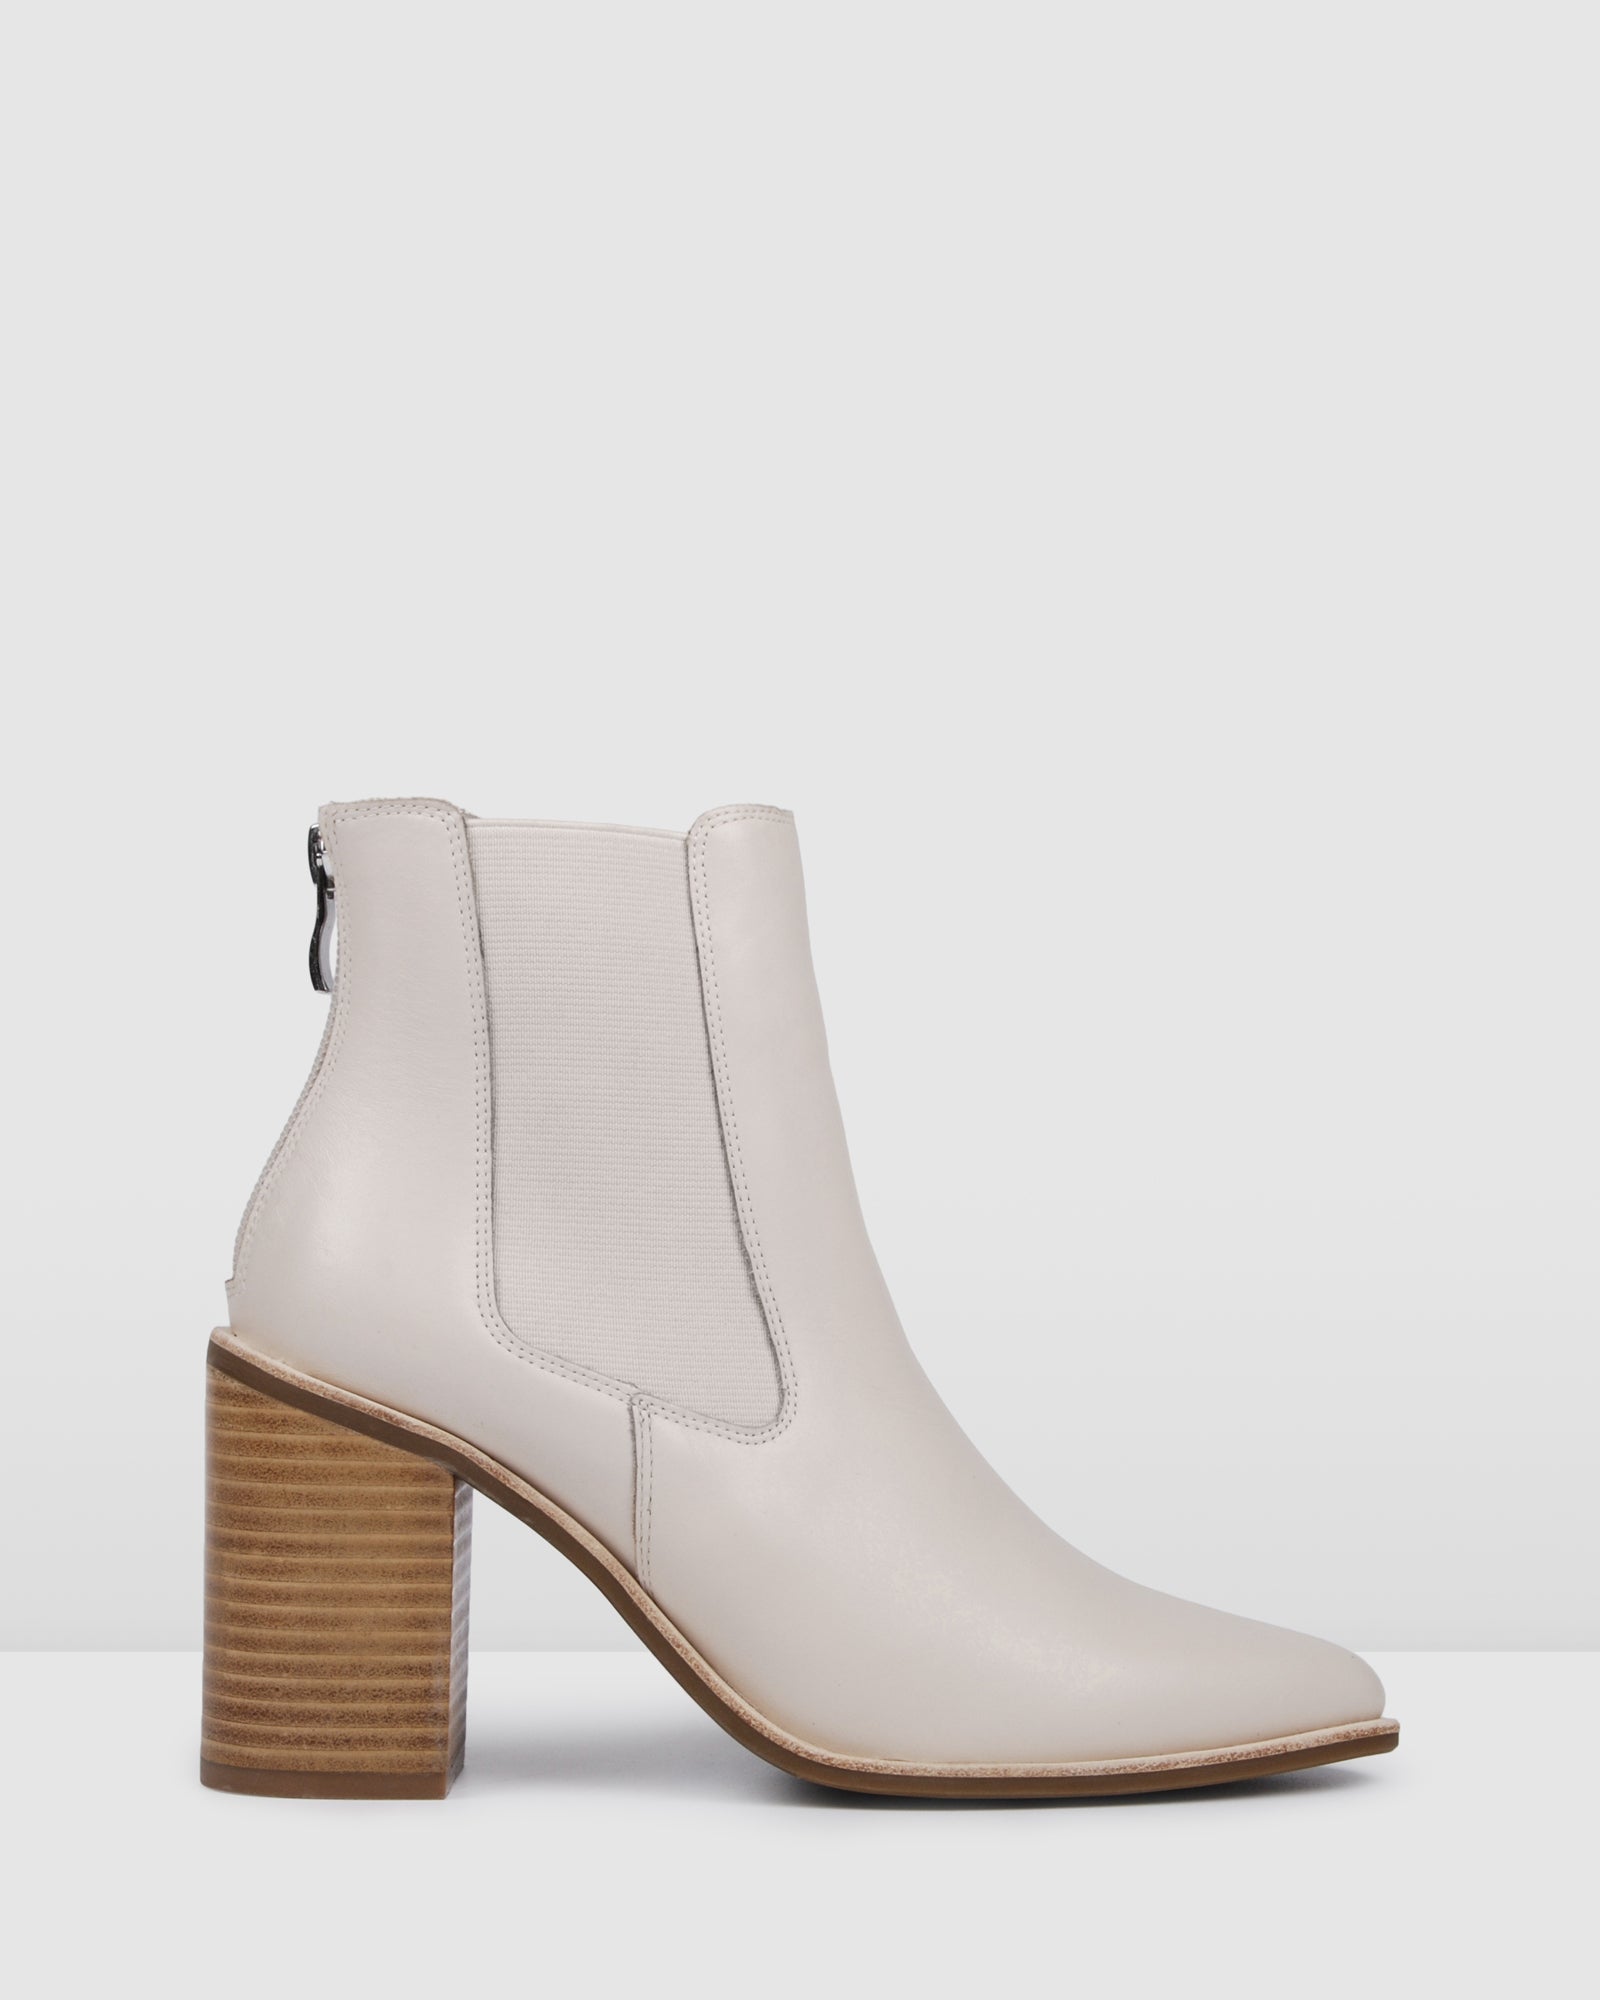 NEW Jo Mercer Lover High Ankle Boots | eBay